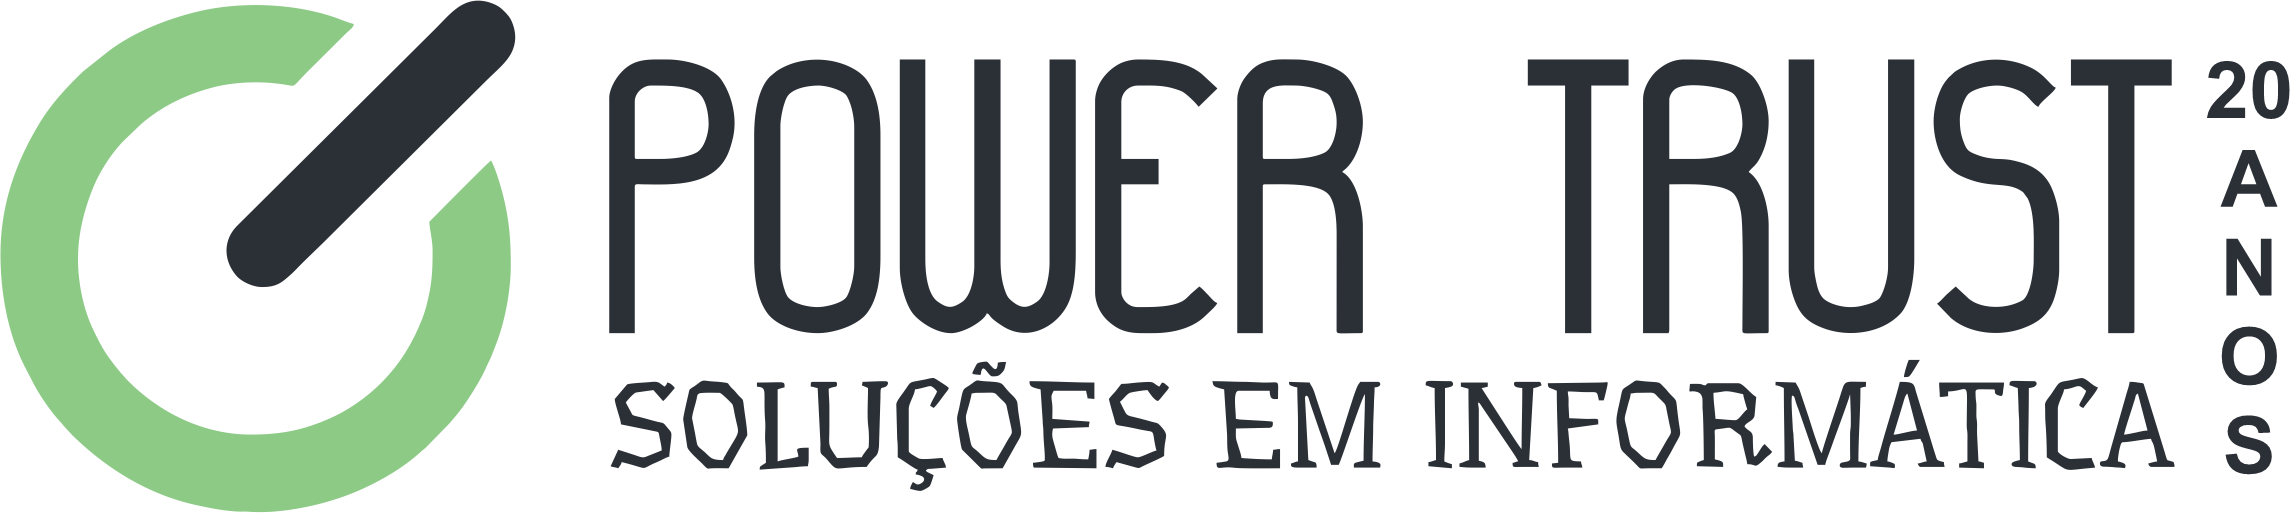 Logo_PowerTrust